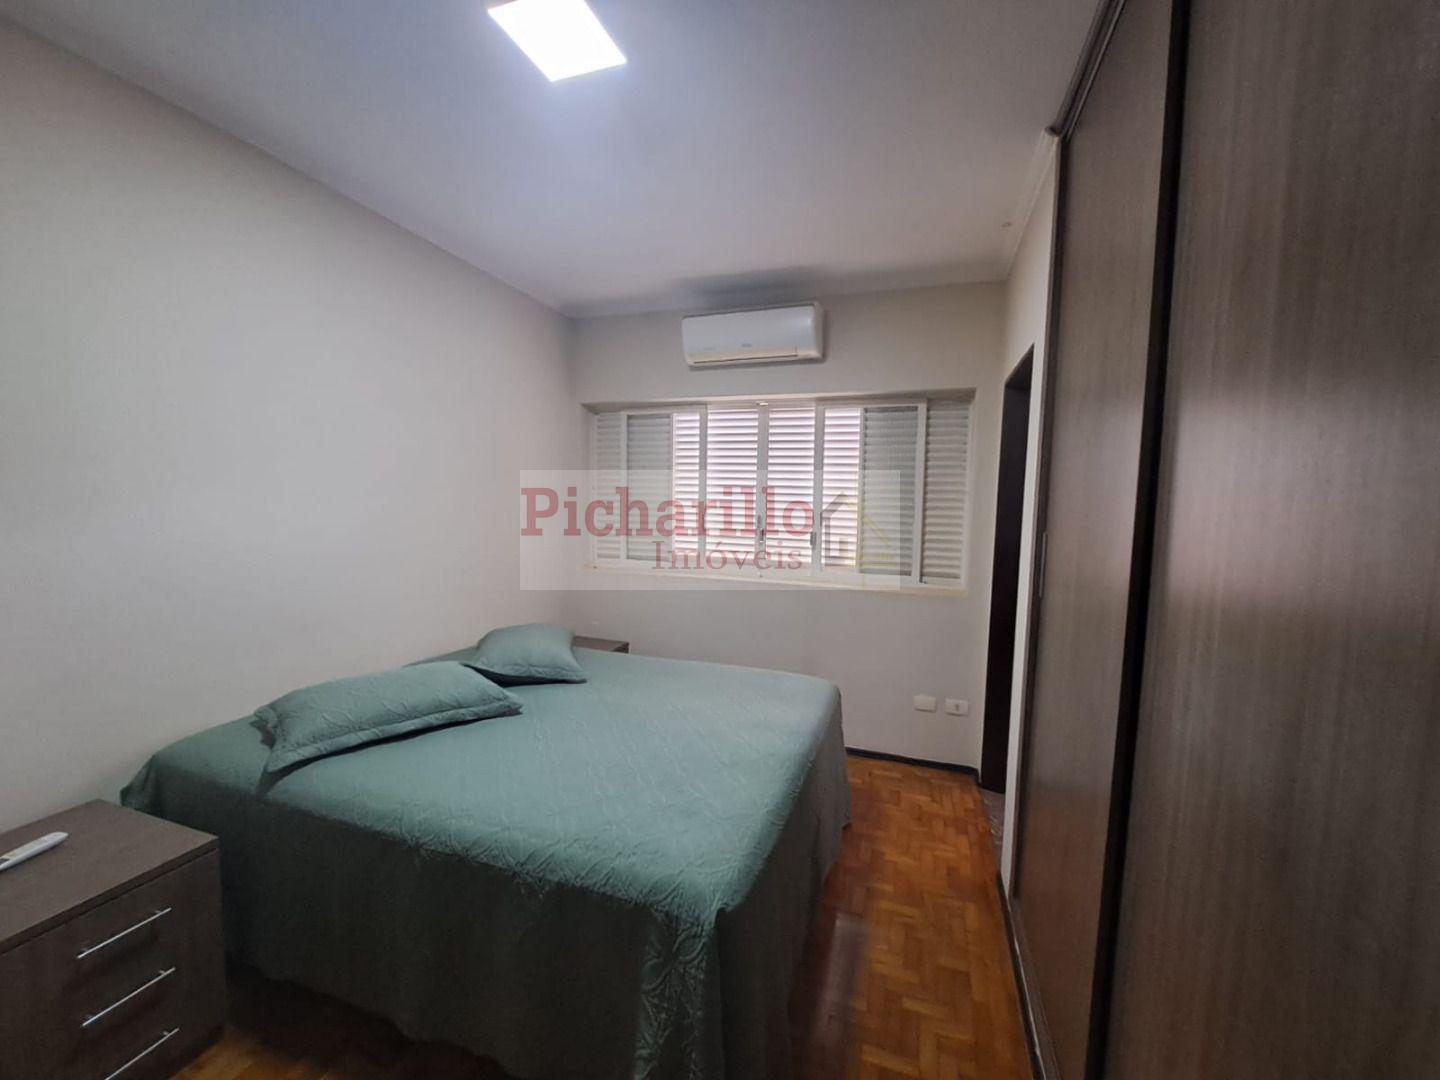 Casa com 3 dormitórios (1 suíte)  à venda, 200 m² - Vila Nery - São Carlos/SP